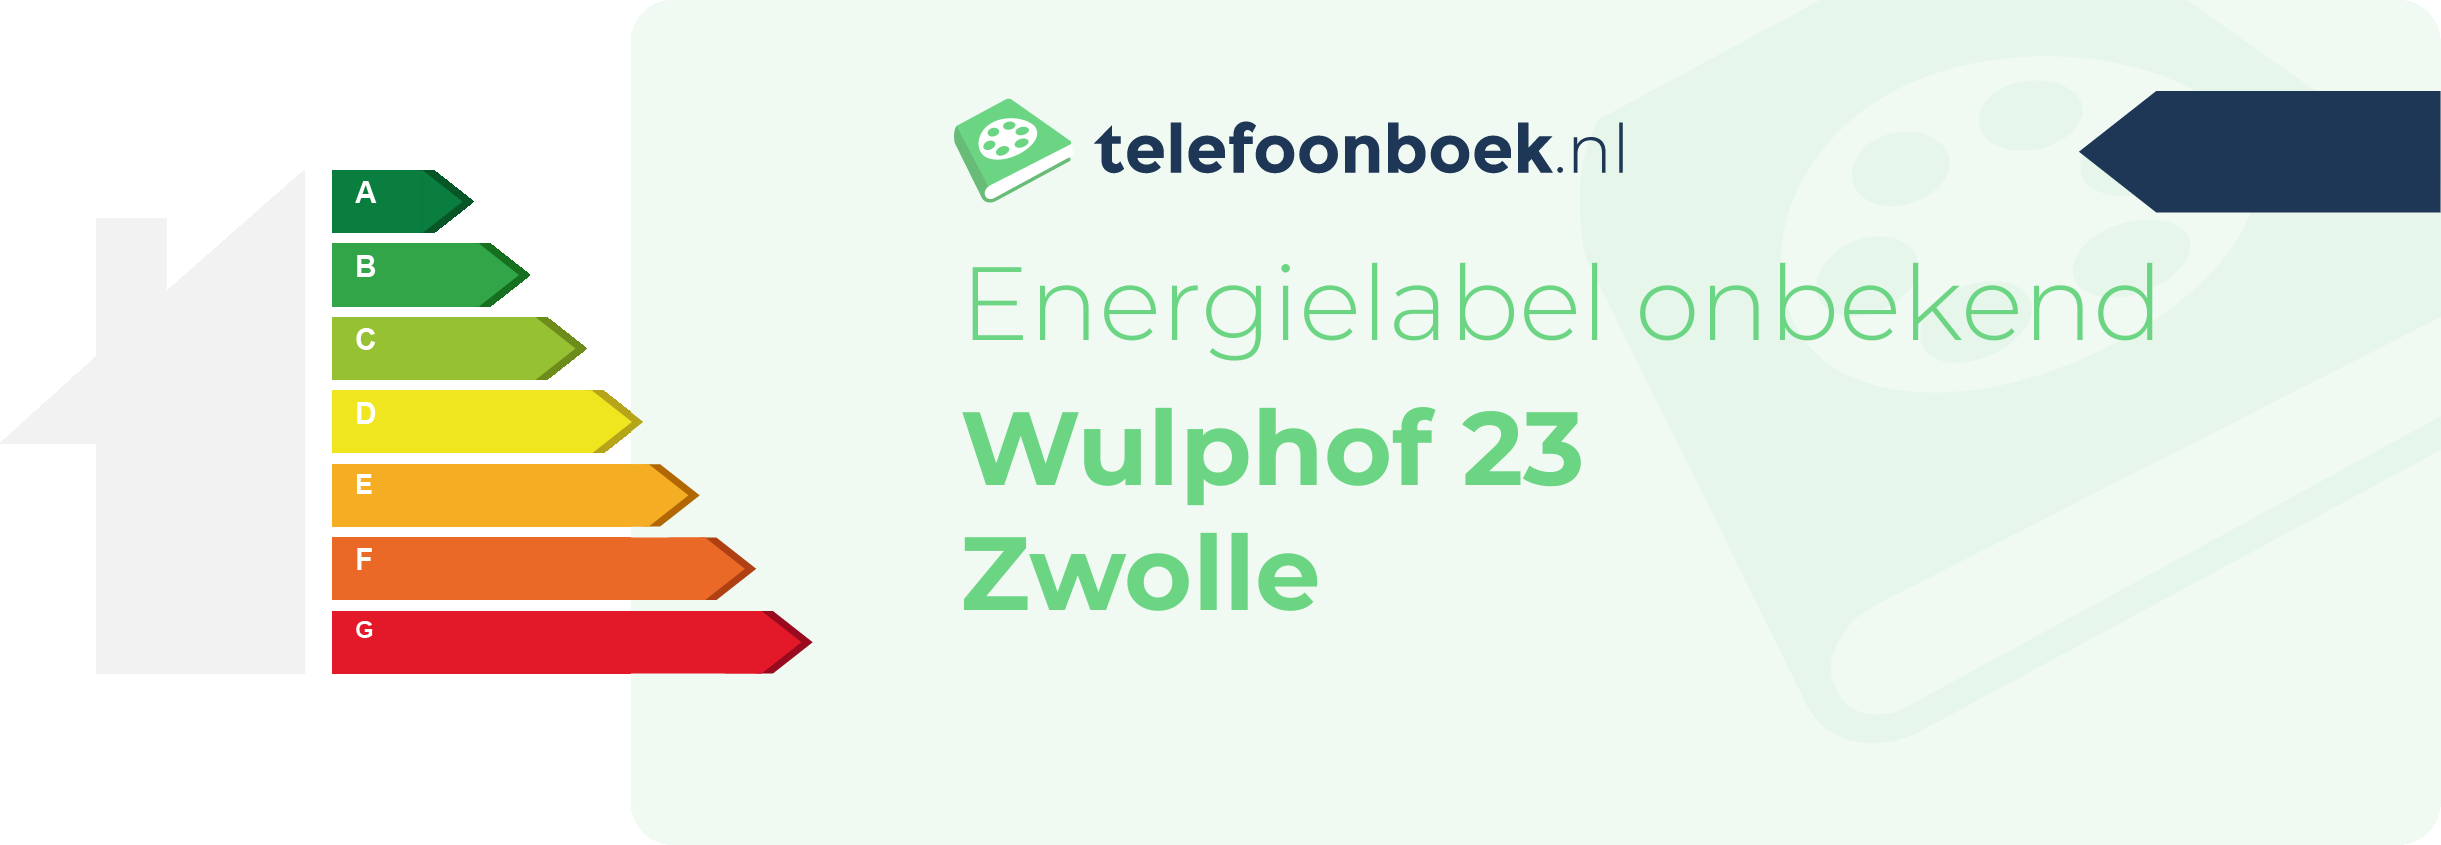 Energielabel Wulphof 23 Zwolle